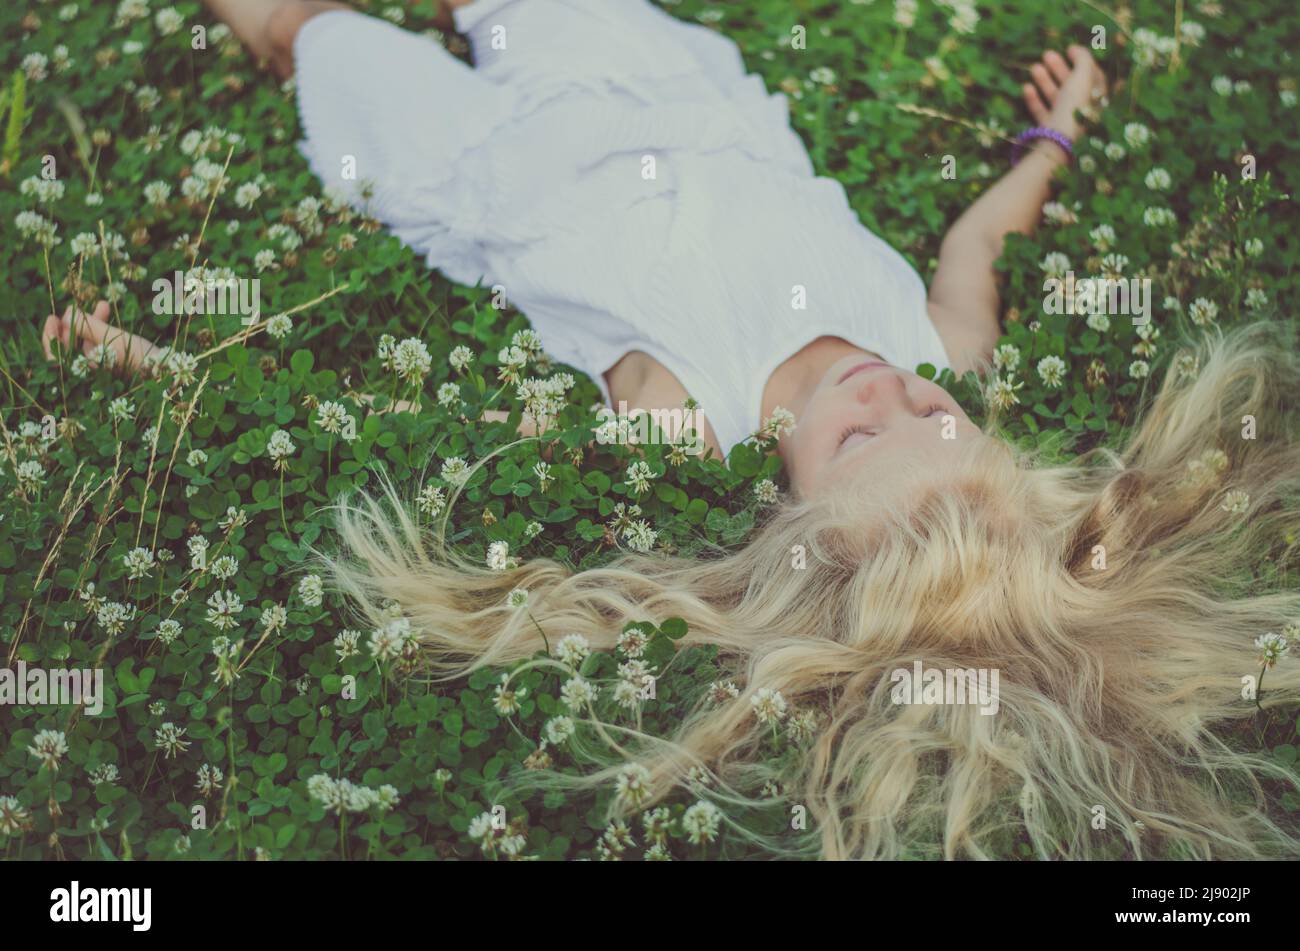 ragazza con capelli biondi lunghi giacenti in erba trifoglio verde con piccoli fiori bianchi, vista dalla prospettiva degli uccelli Foto Stock